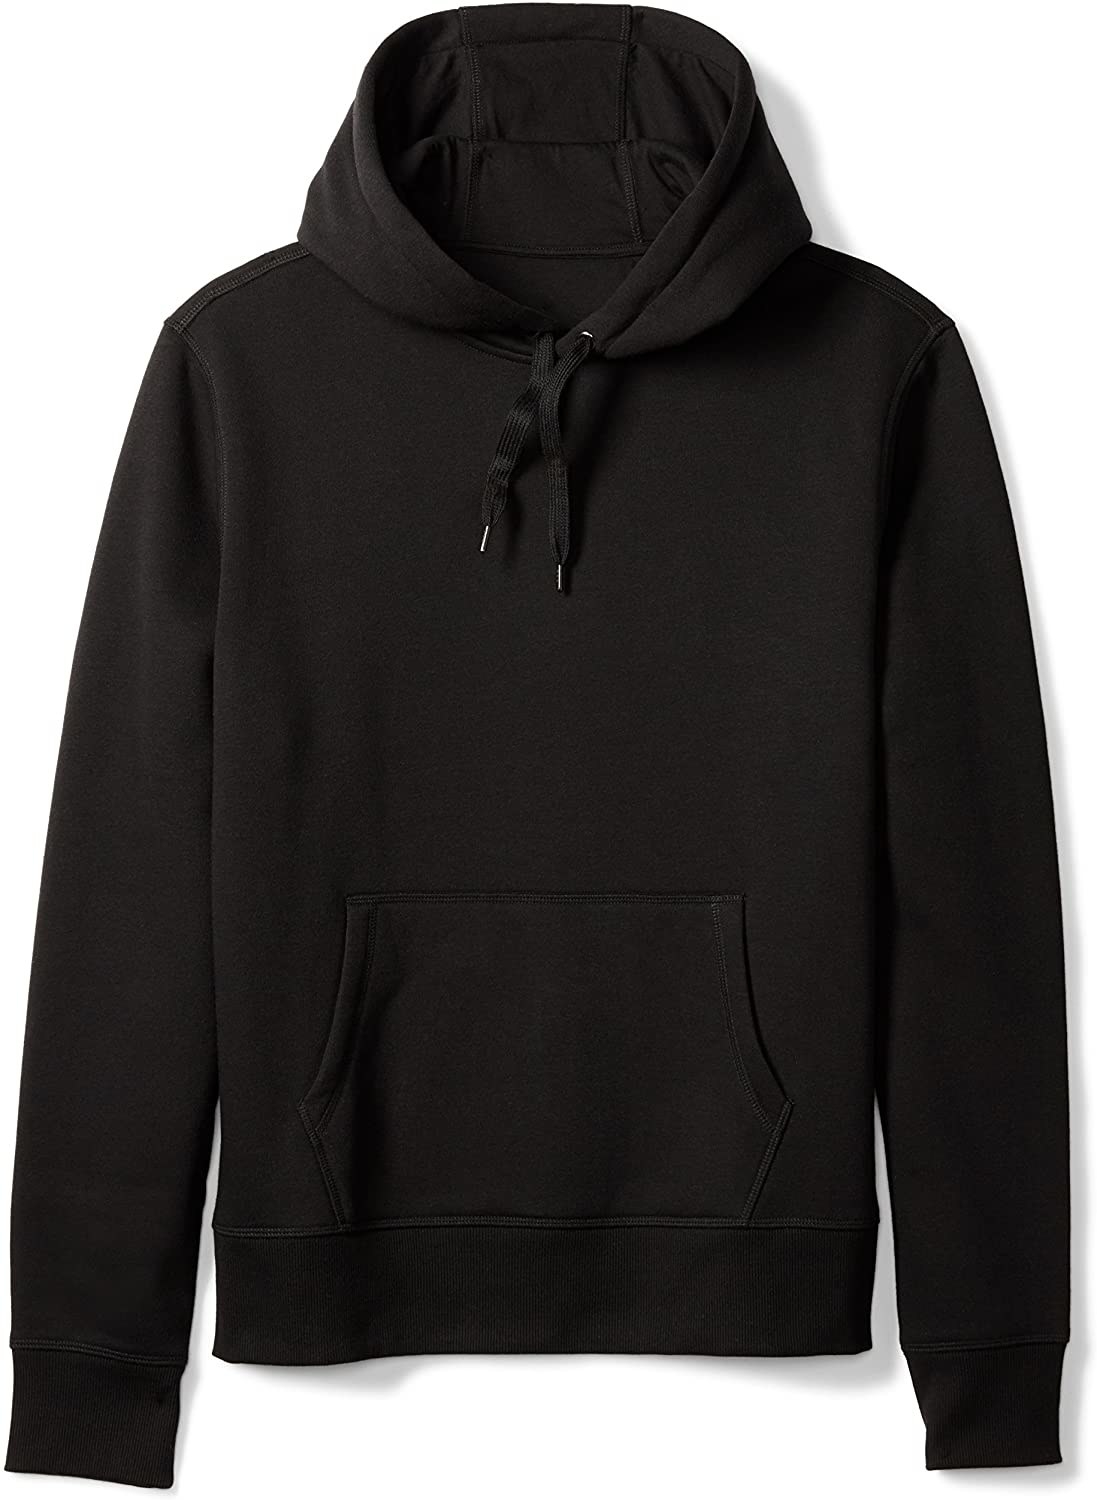 the black hoodie